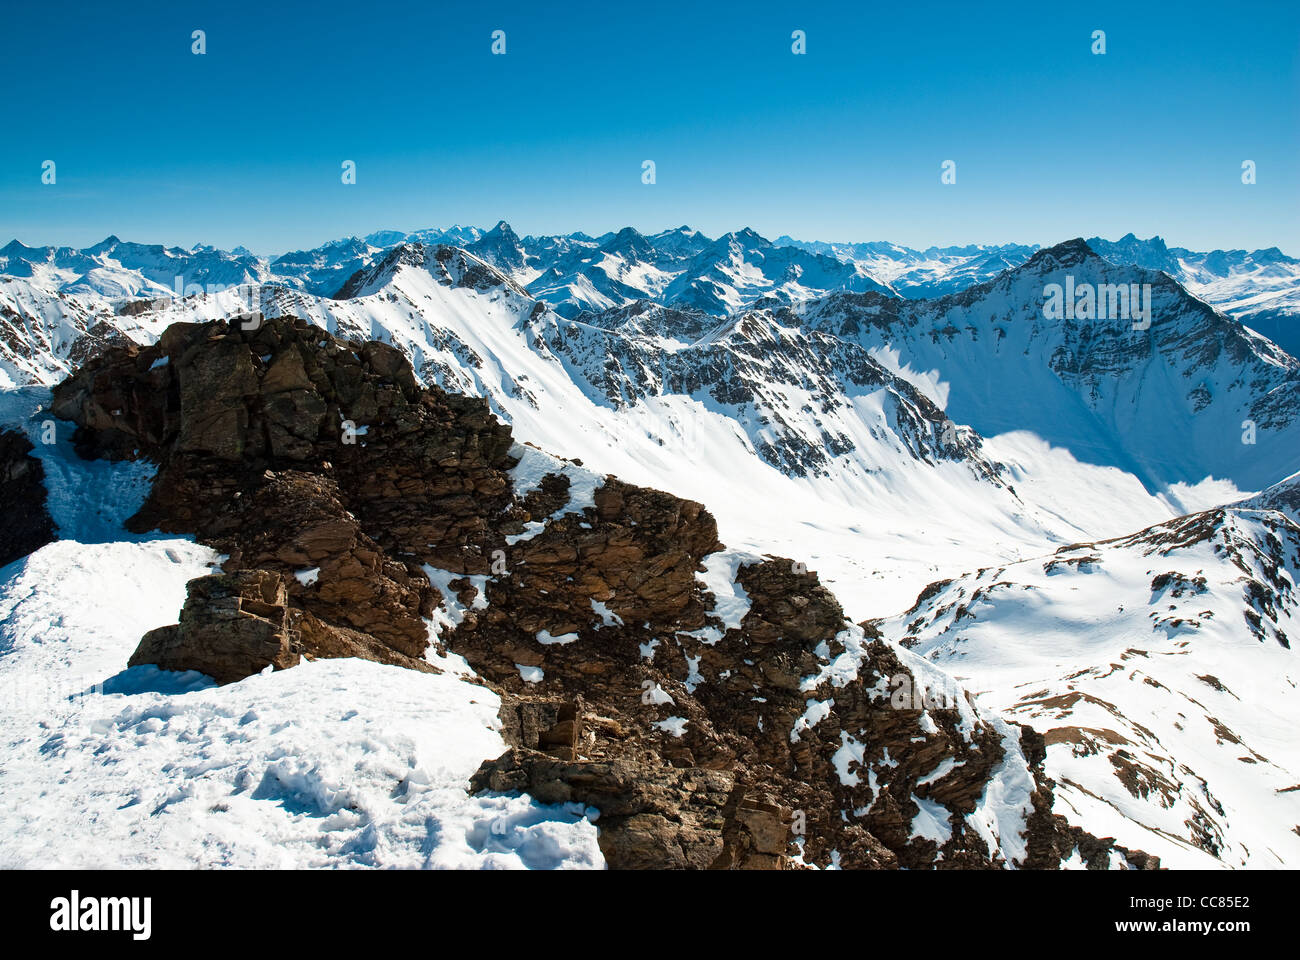 Mountains at lenzerheide in winter. View from Rothorn, Lenzerheide, Graubuenden, Switzerland Stock Photo